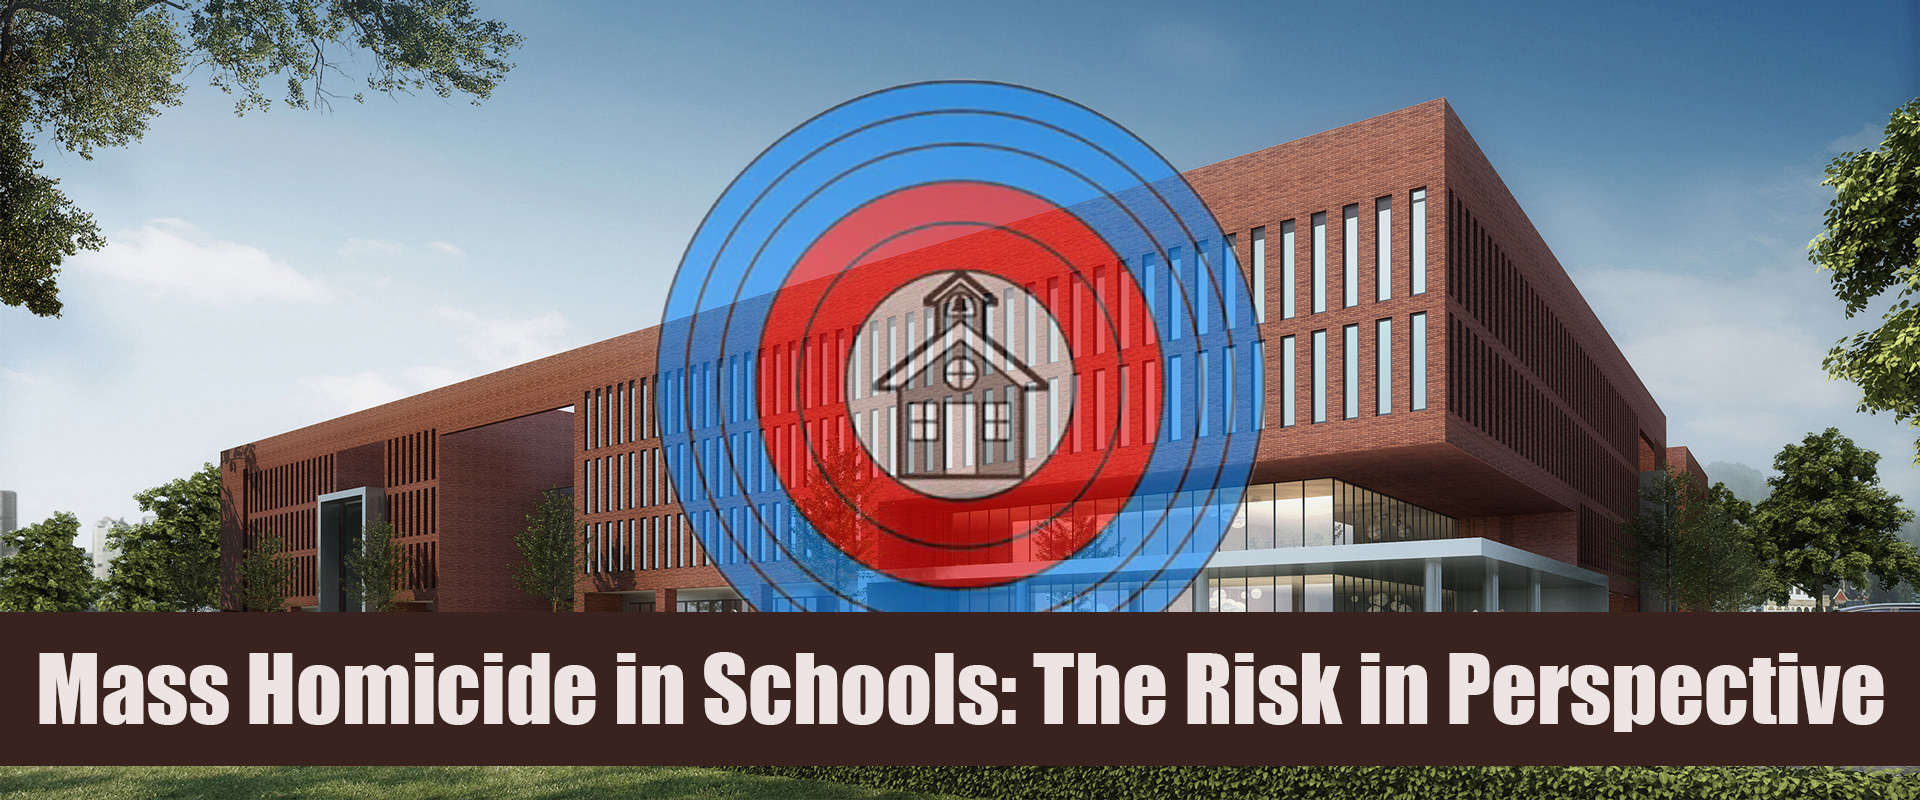 Mass Homicide in Schools - Risk Perspective